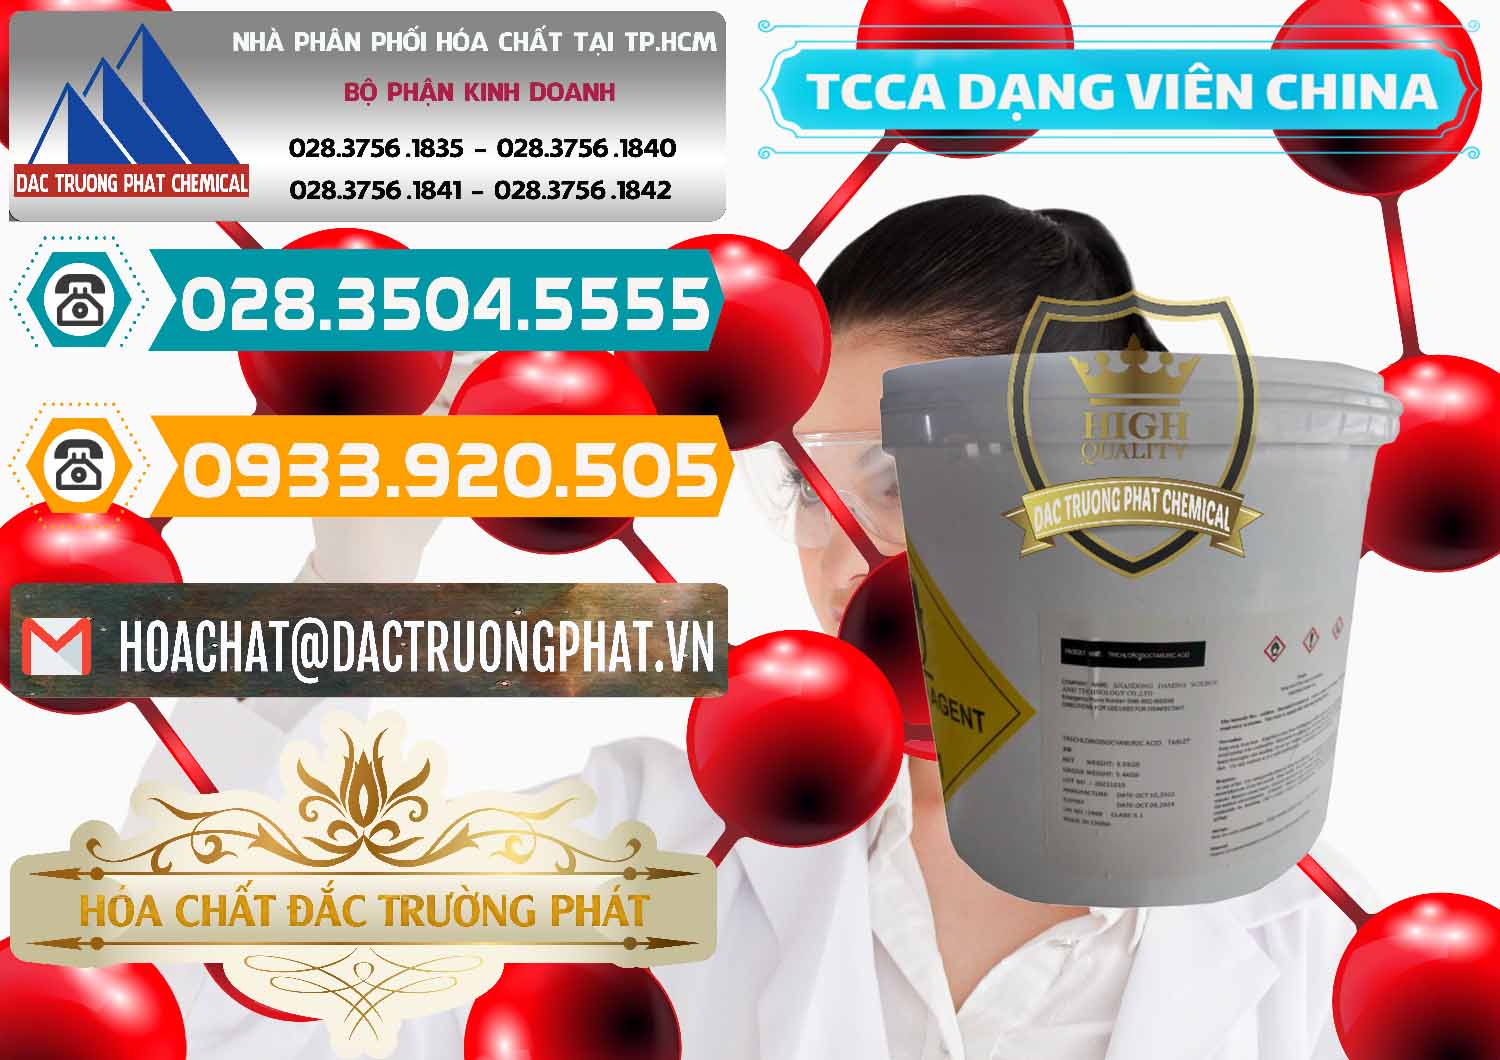 Cung cấp ( bán ) TCCA - Acid Trichloroisocyanuric Dạng Viên Thùng 5kg Trung Quốc China - 0379 - Cty kinh doanh & phân phối hóa chất tại TP.HCM - congtyhoachat.vn